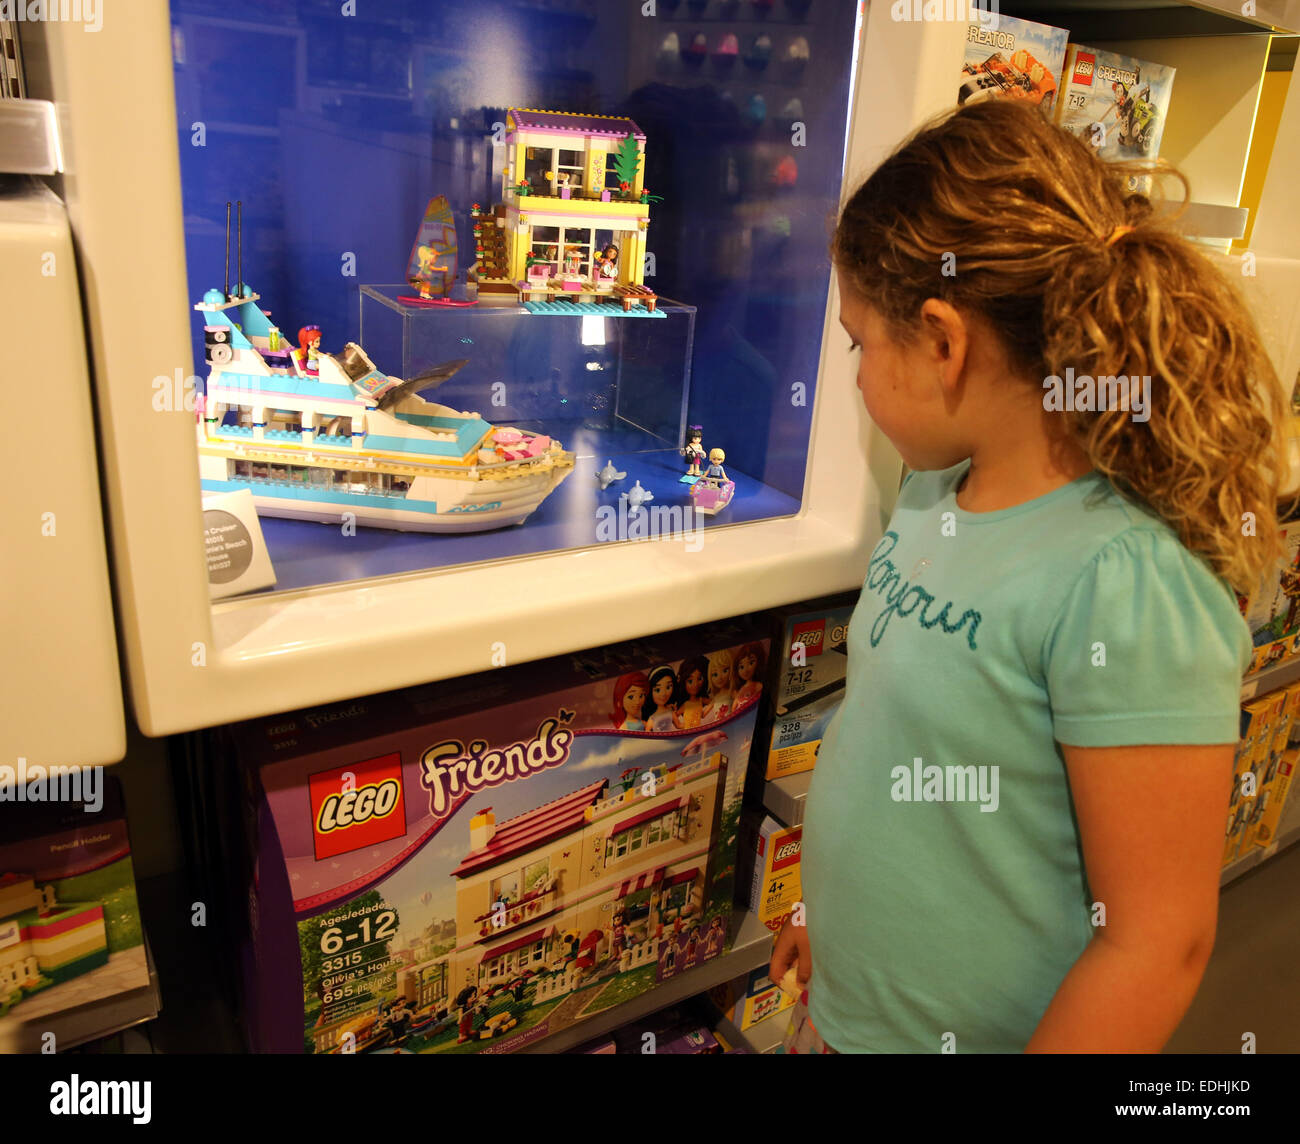 Mission Viejo, Kalifornien, USA. 8. Juni 2014. Ein junges Mädchen schaut "Lego Friends" Modelle im Lego Store in Geschäften in Mission Viejo Mall. LEGO Freunde in Heartlake City ist ein Sortiment an die Lego Konstruktionsspielzeug wendet sich hauptsächlich an Mädchen. LEGO begann mit der Herstellung von ineinandergreifenden Spielzeug Ziegel im Jahr 1949. Seit damals hat eine globale Lego-Subkultur entwickelt, Filme, Spiele, Wettbewerbe und sechs thematischen Vergnügungsparks zu unterstützen. Ab dem Jahr 2013 waren rund 560 Milliarden Lego Teile produziert worden. © Ruaridh Stewart/ZUMA Wire/ZUMAPRESS.com/Alamy Live-Nachrichten Stockfoto